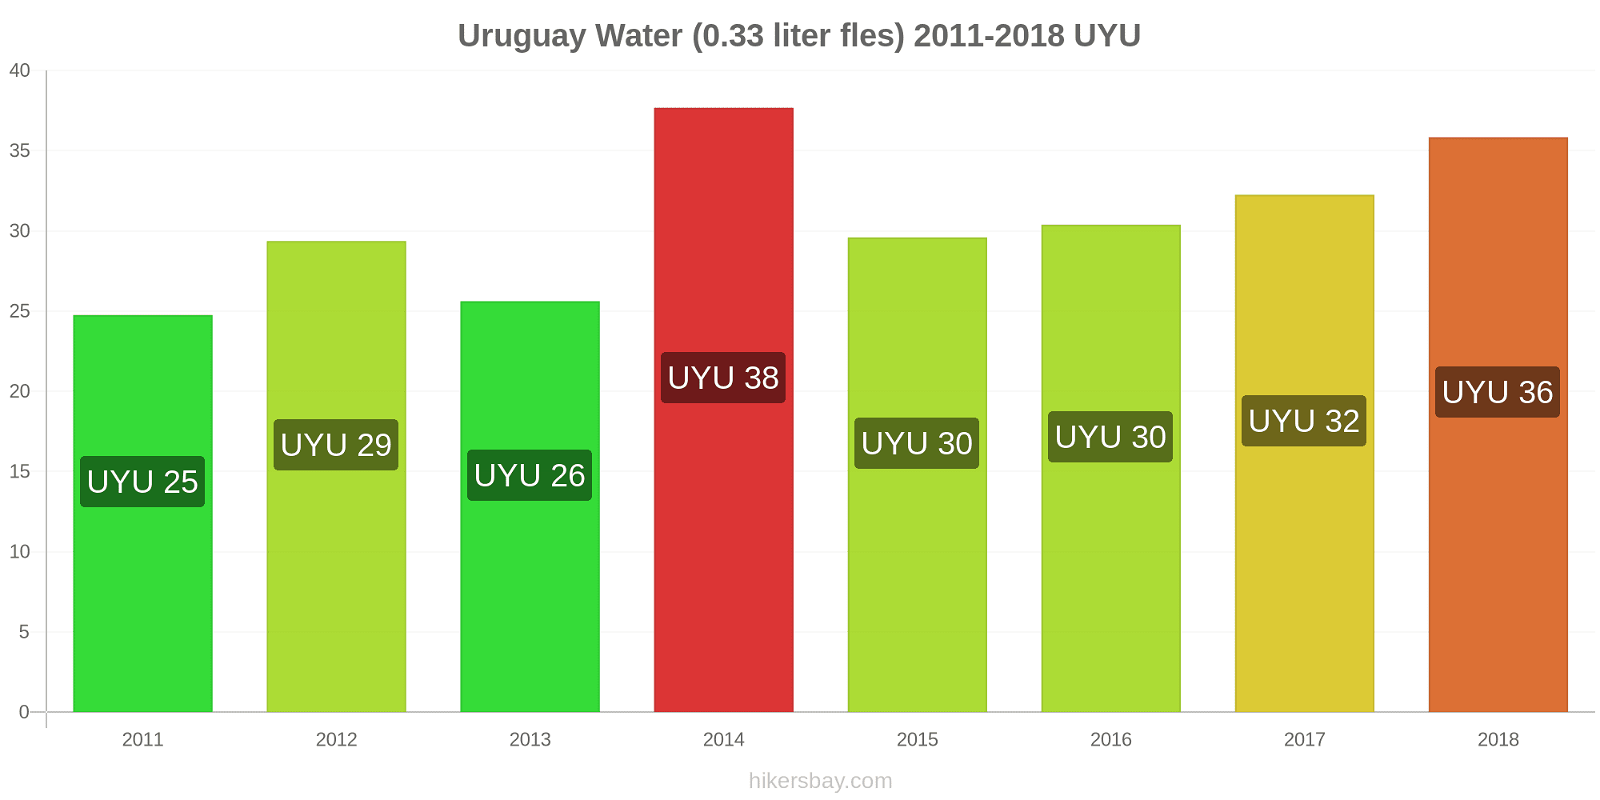 Uruguay prijswijzigingen Water (0.33 liter fles) hikersbay.com